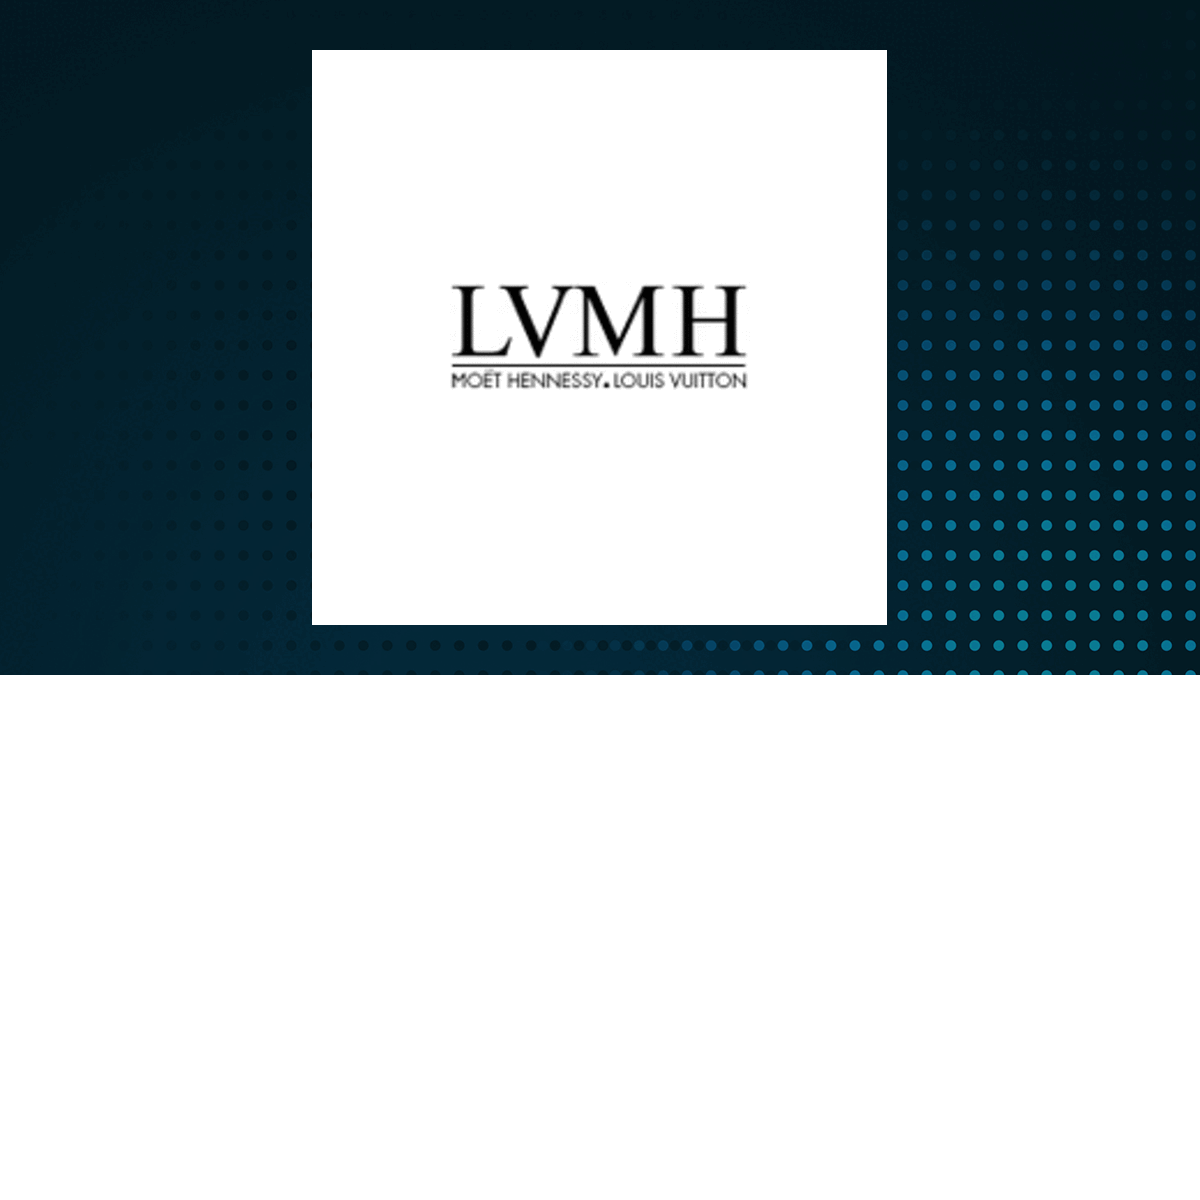 LVMH Moët Hennessy - Louis Vuitton, Société Européenne logo